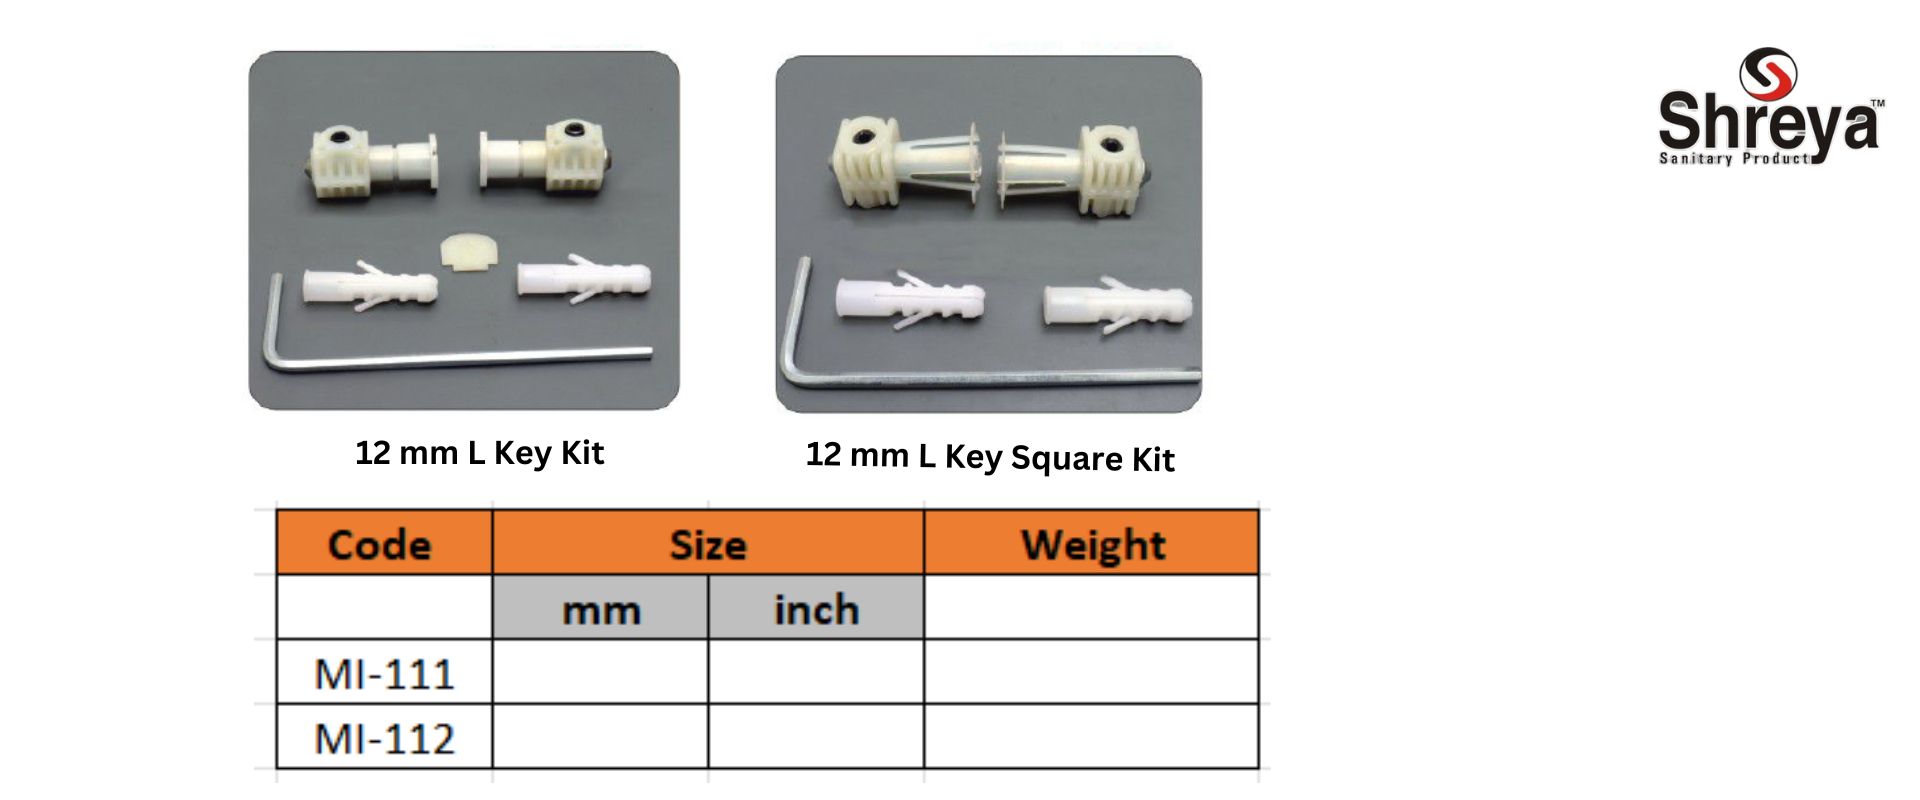 12 mm L Key Kit